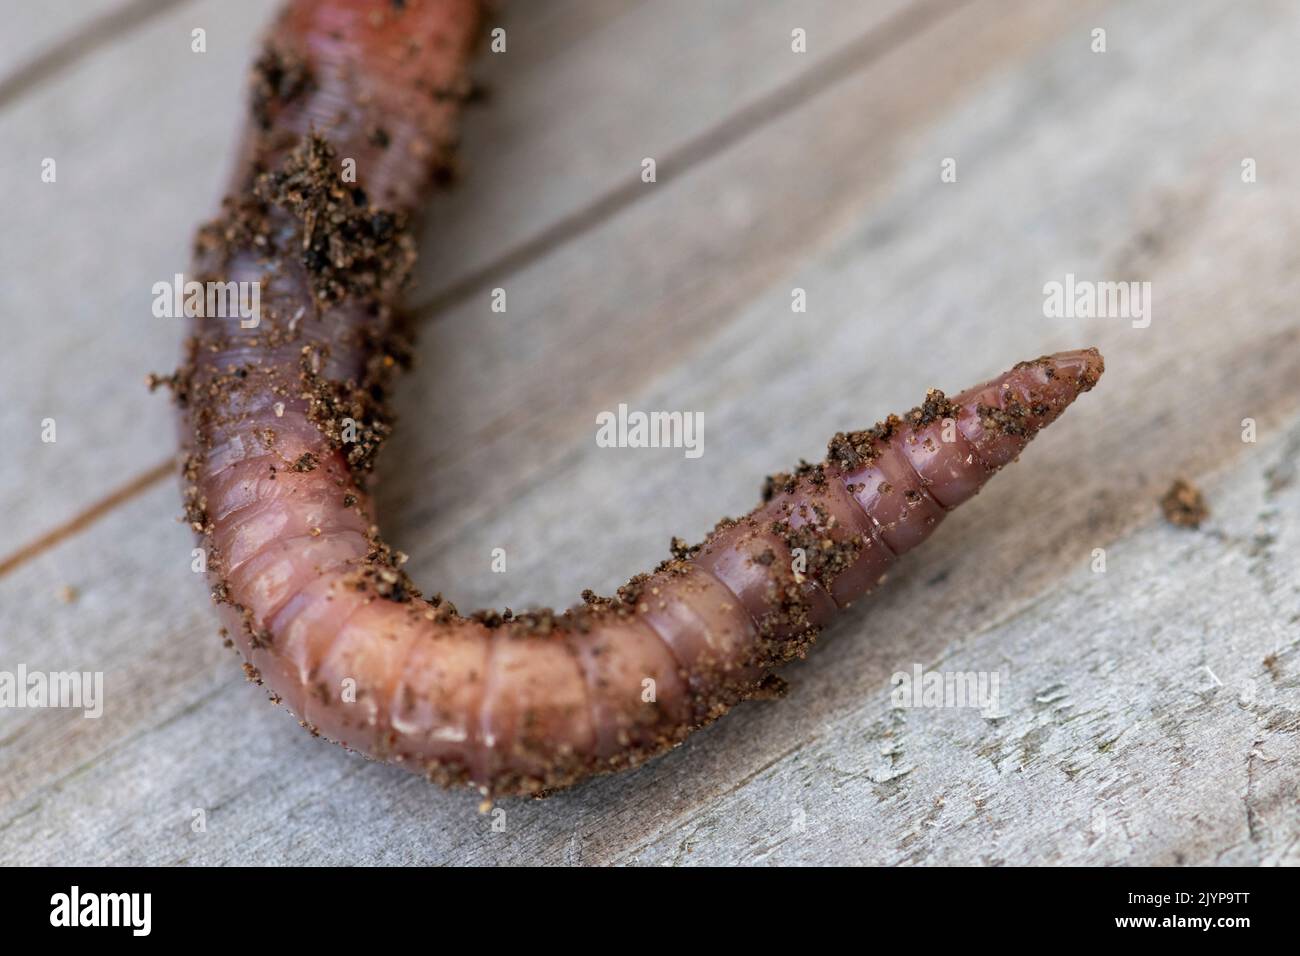 Earthworm (Lumbricus terrestris) tip, Pas de Calais, France Stock Photo